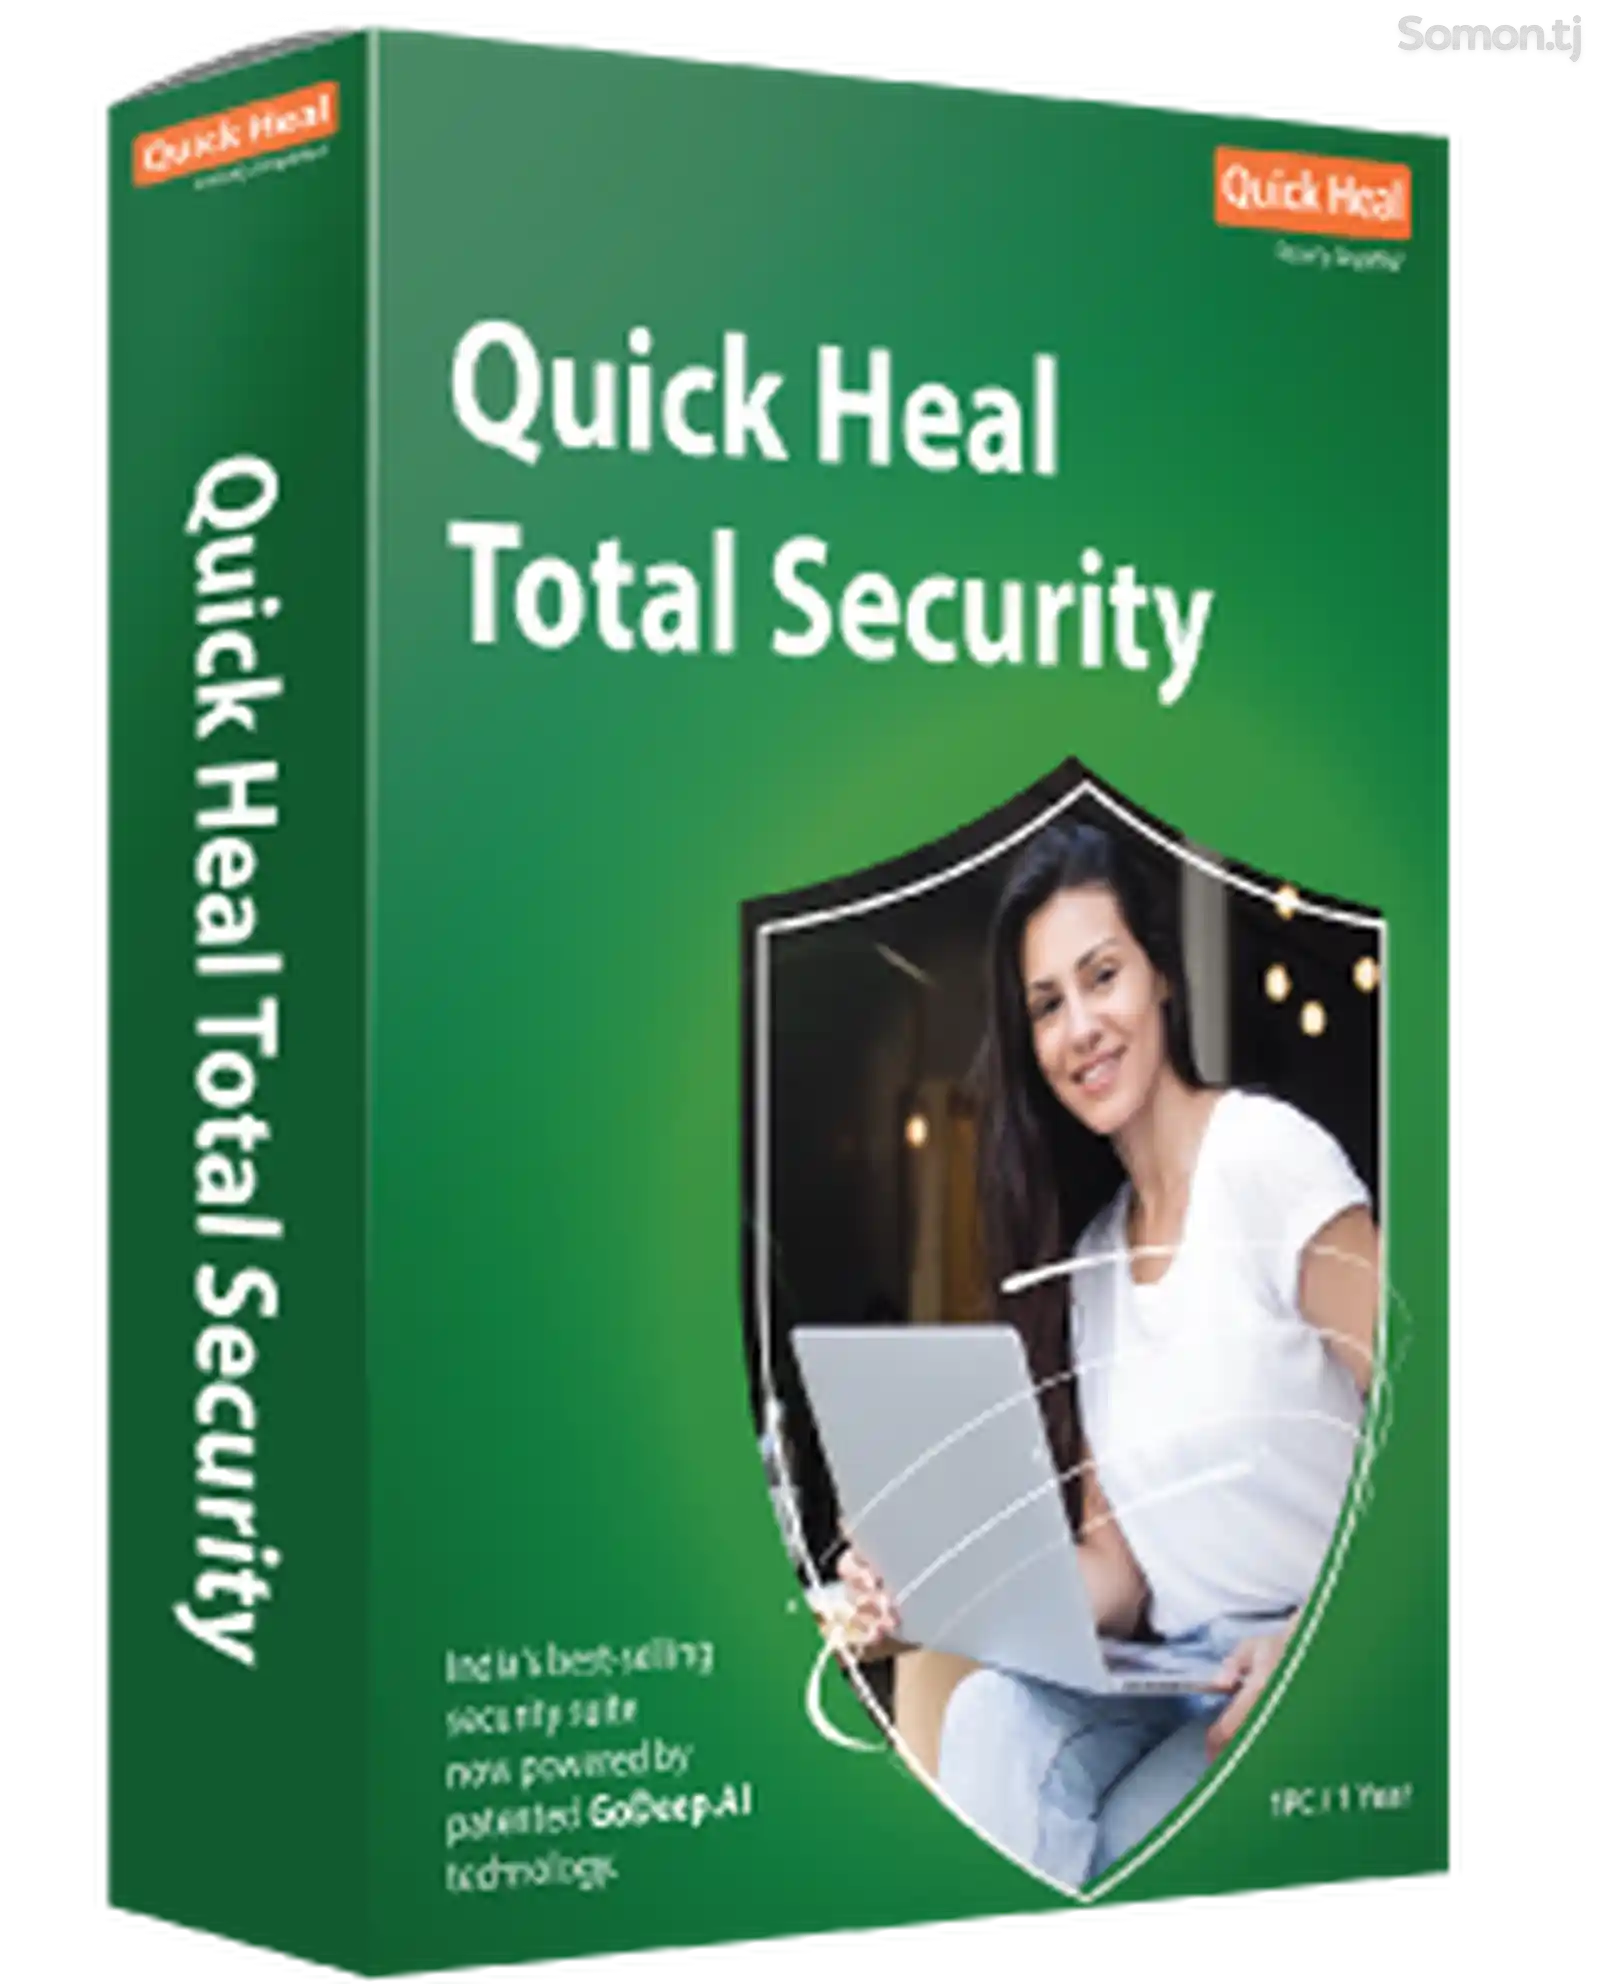 Quick Heal Total Security - иҷозатнома барои 5 роёна, 1 сол